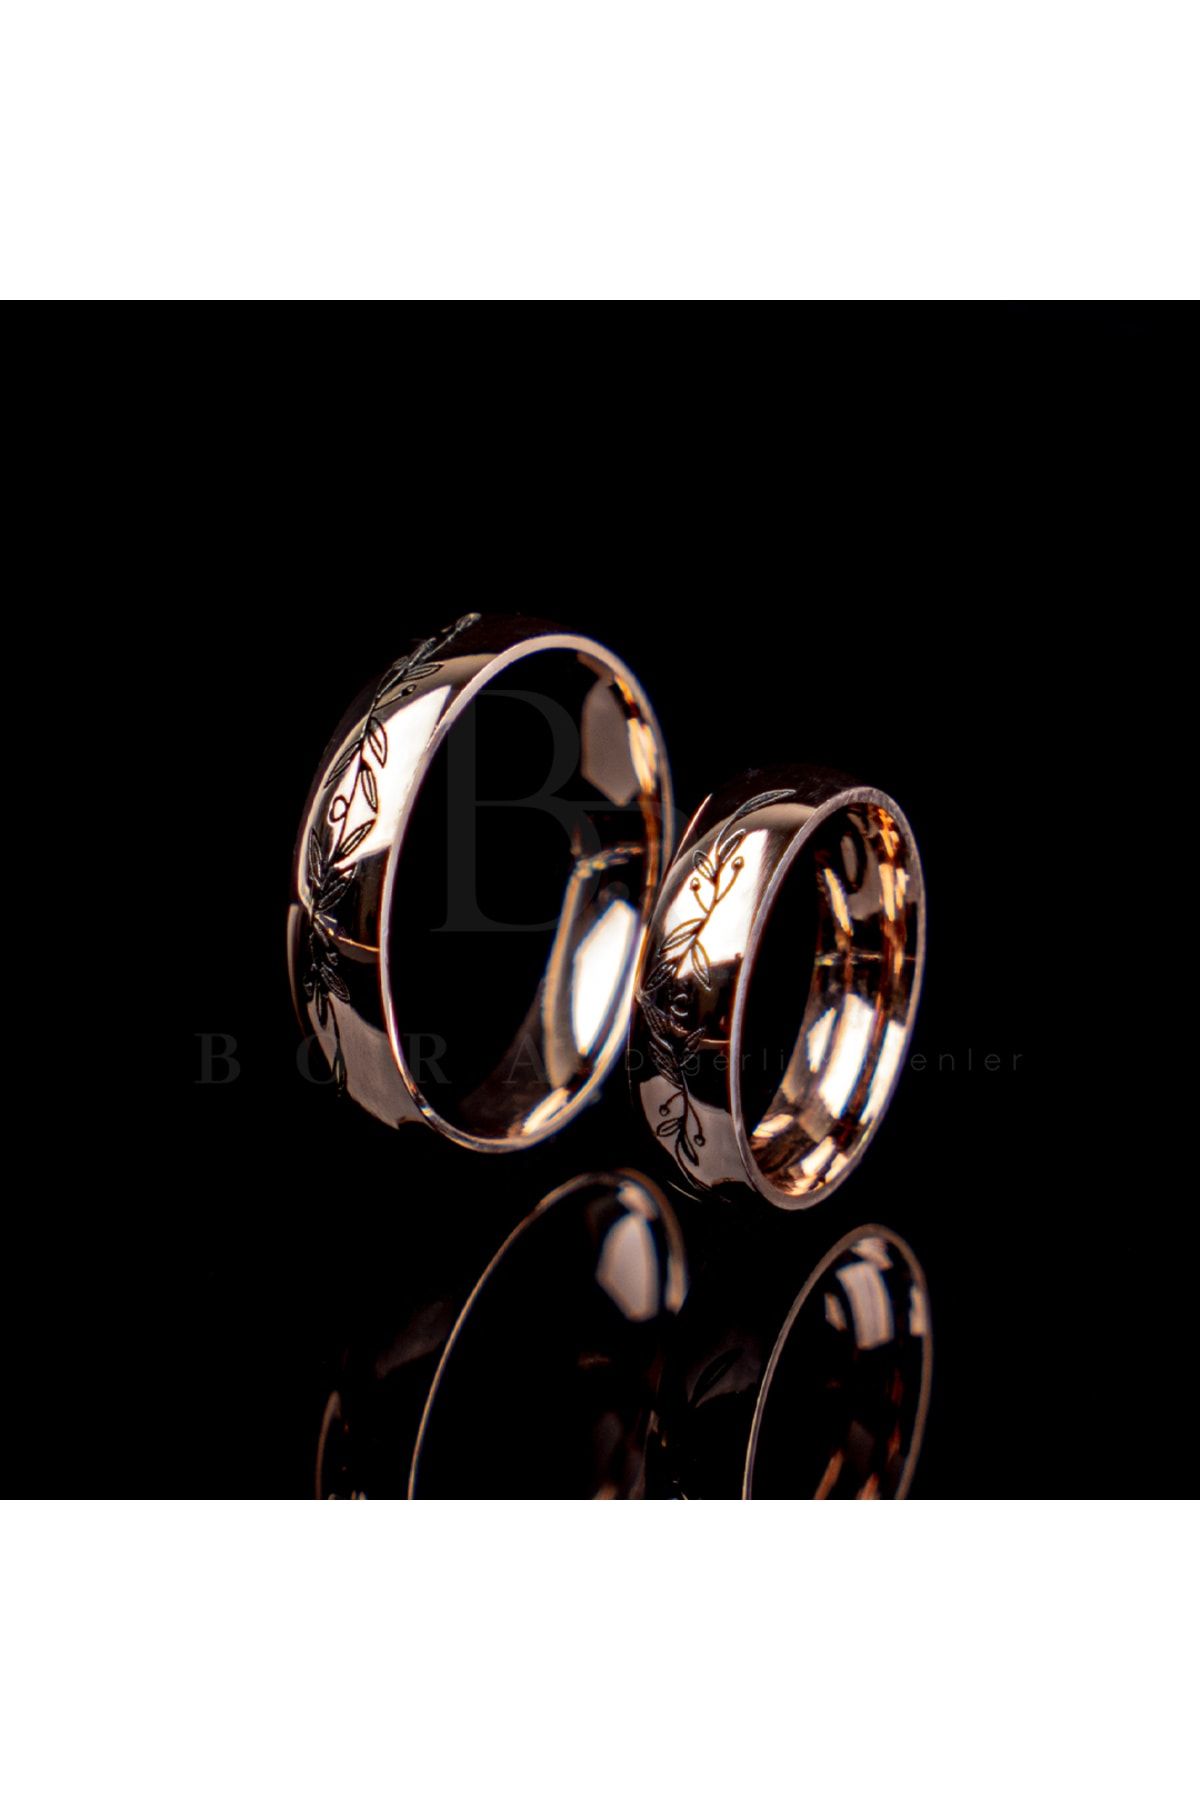 Bora Değerli Madenler Sarmaşık Işlemeli Gümüş Alyans, Nişan Yüzüğü, Uyumlu Yüzükler